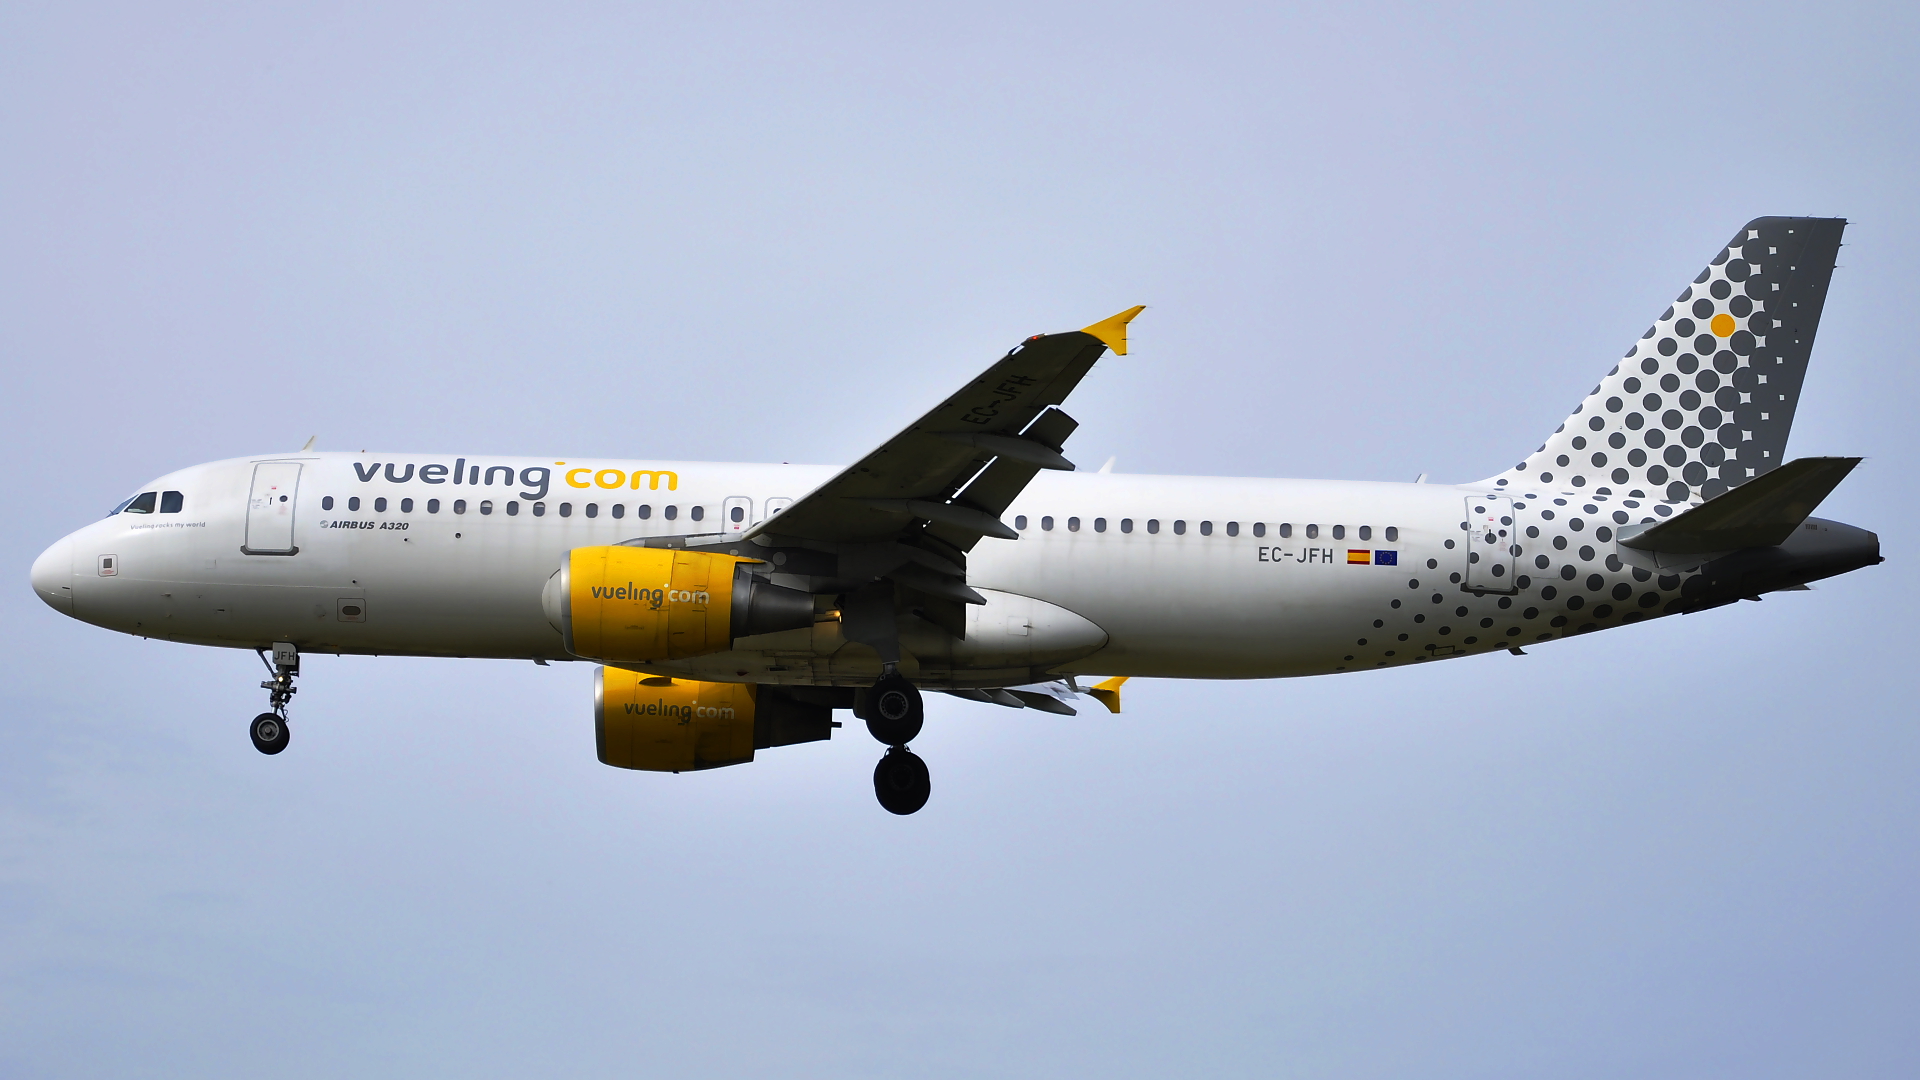 EC-JFH ✈ Vueling Airlines Airbus 320-214 @ London-Heathrow